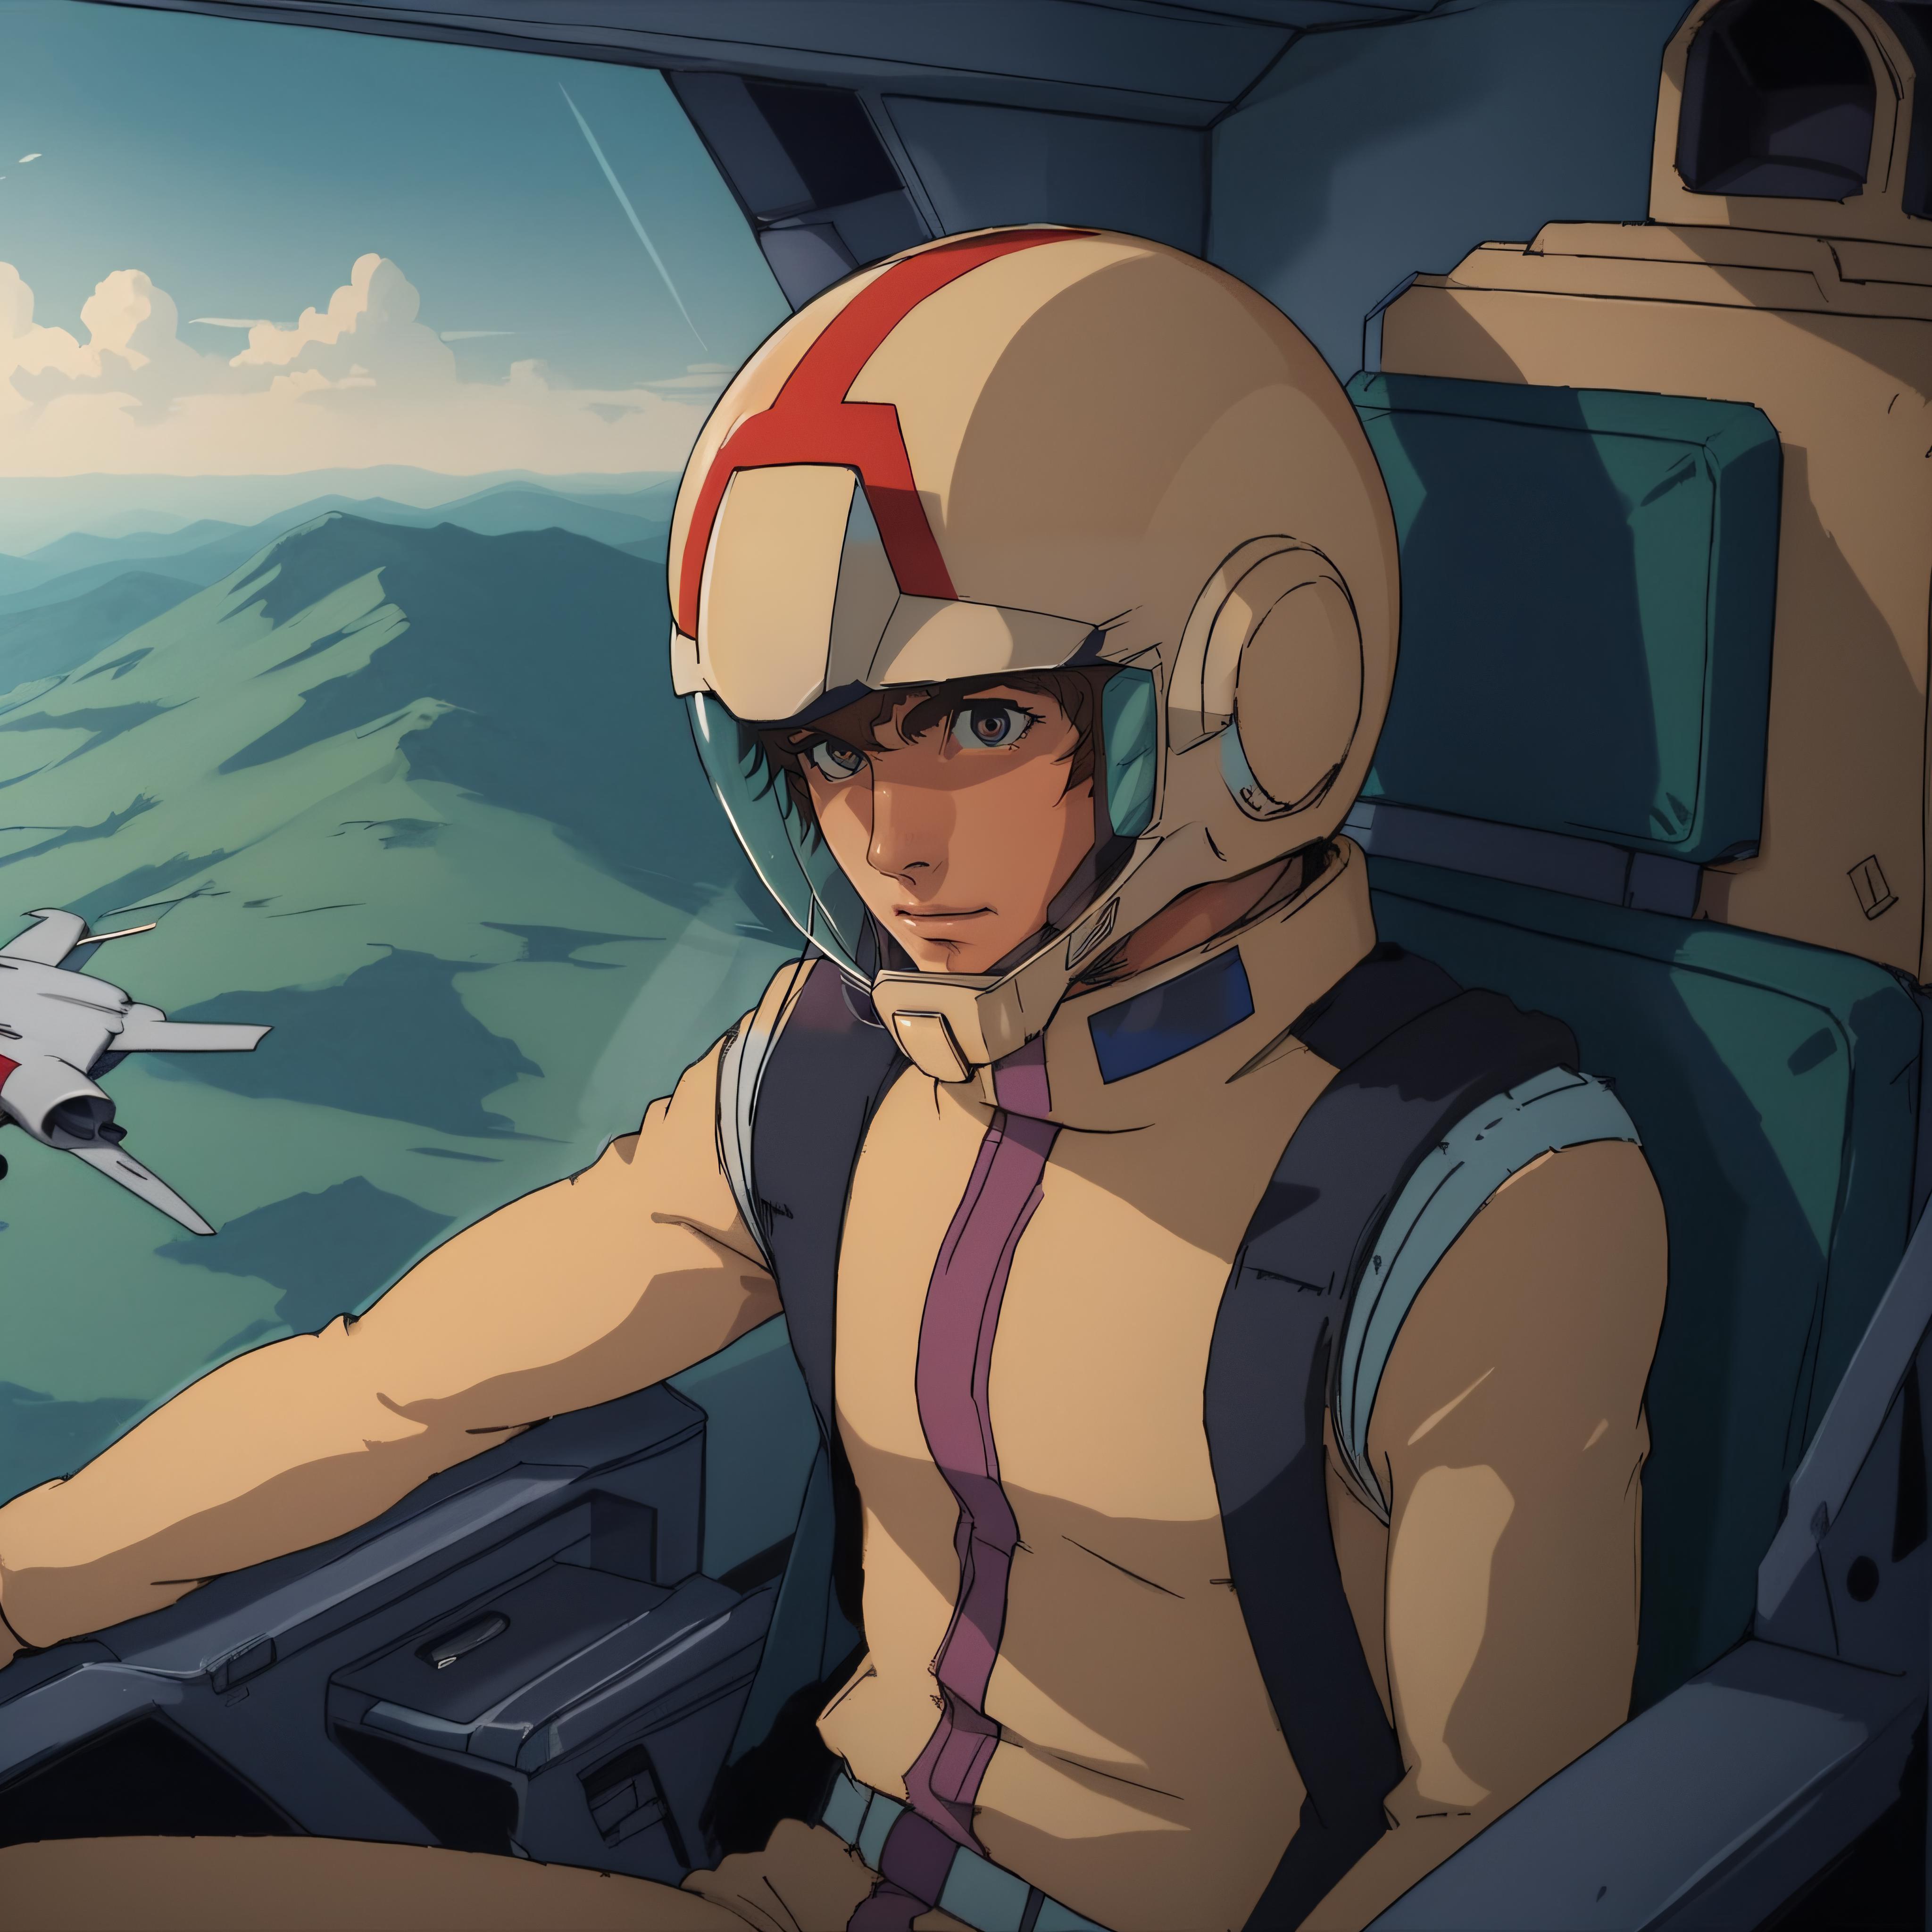 EFF Pilot (Mobile Suit Gundam) image by RubiWanJinn